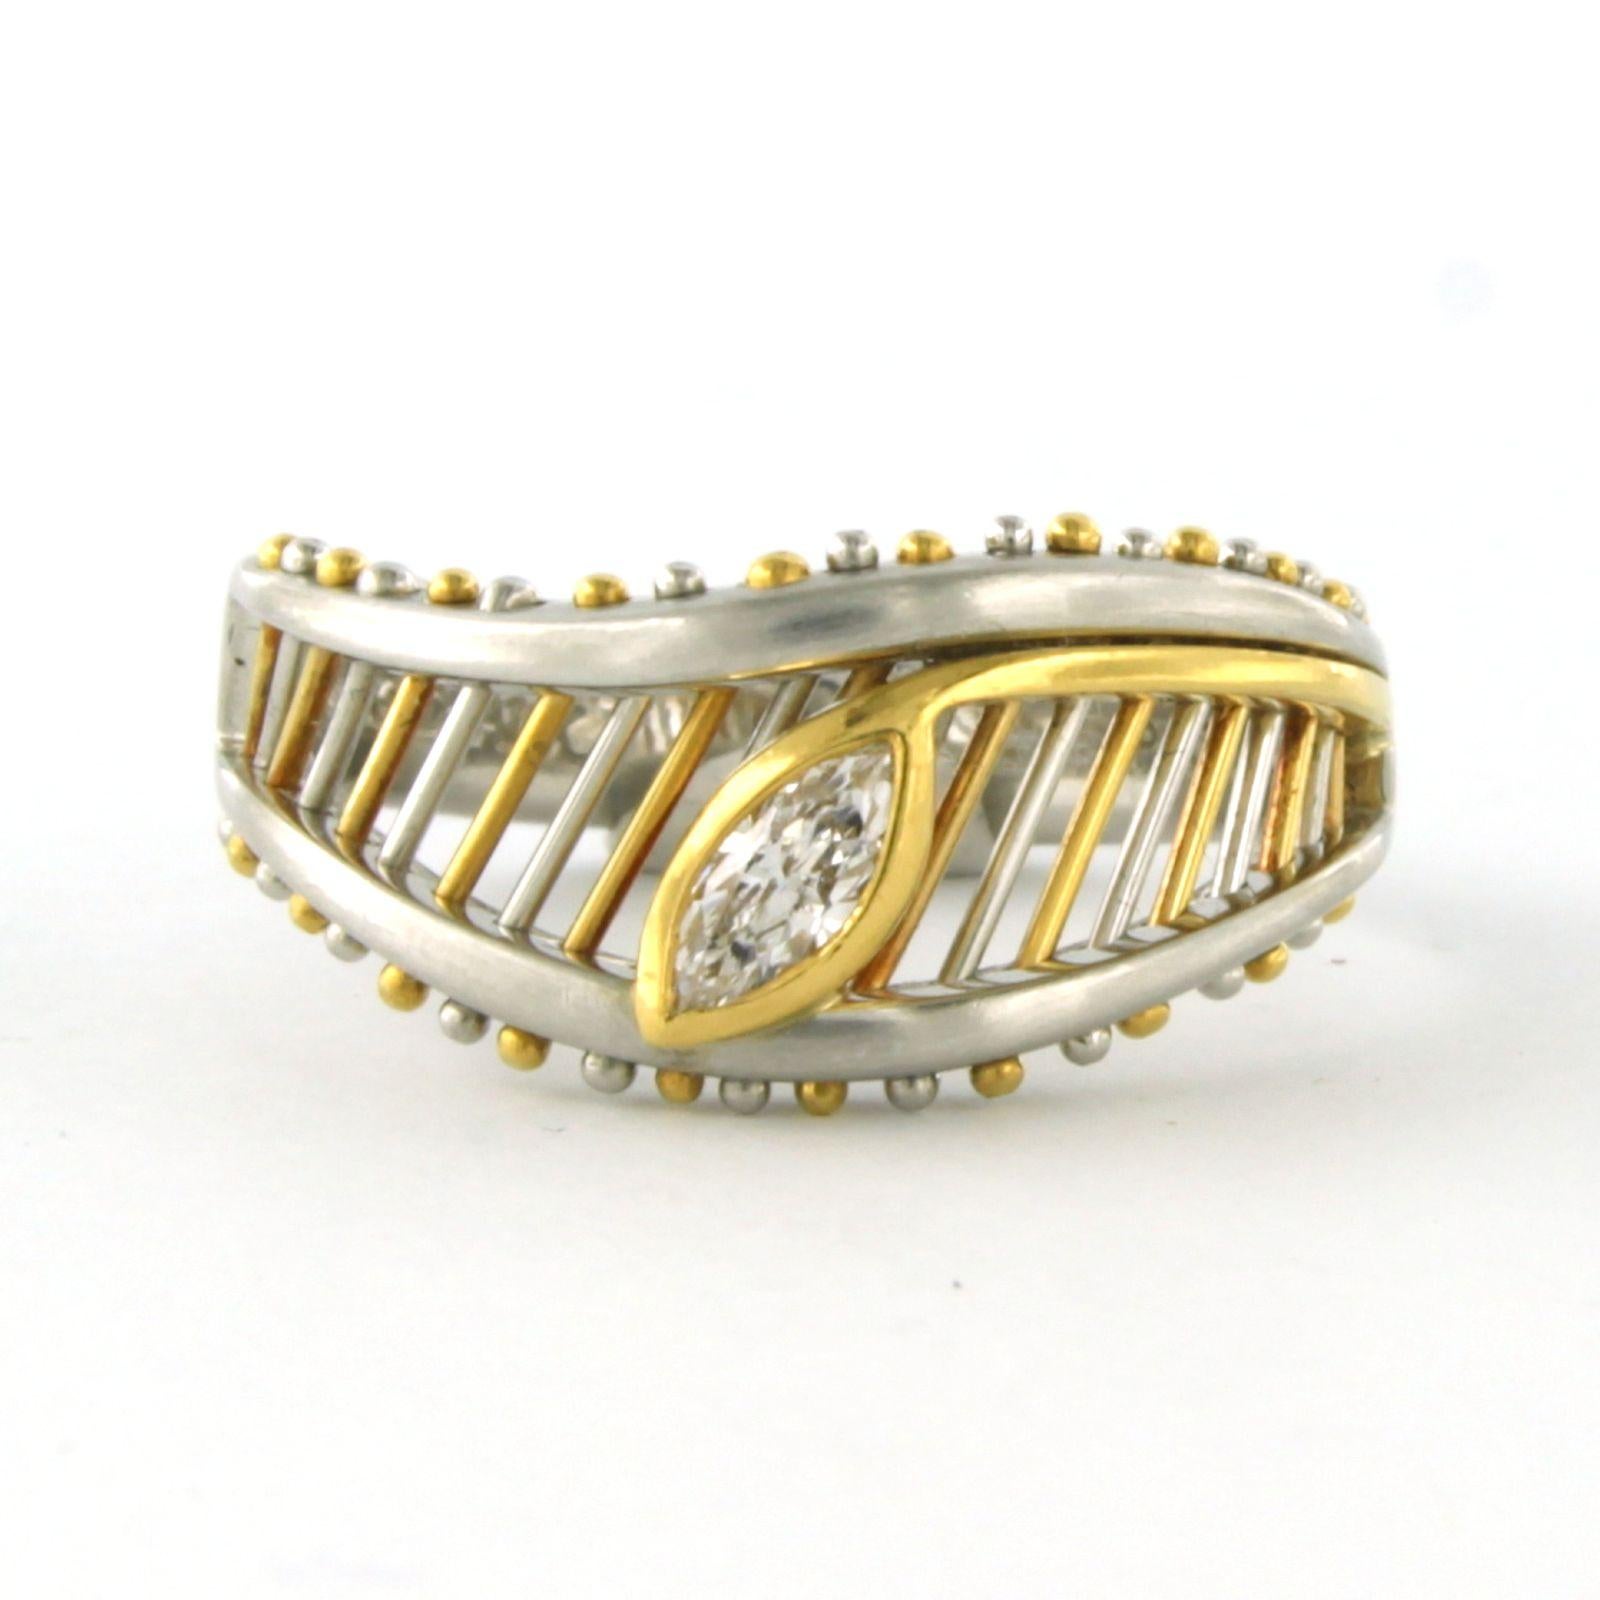 Platin mit 18k Gold Ring mit Marquise geschnittenen Diamanten 0,18 ct F/G US - Ringgröße US. 6.75 - EU. 17.25 (54)

Ausführliche Beschreibung

die Oberseite des Rings ist 10,4 mm breit und 3,8 mm hoch

Ringgröße US 6.75 - EU. 17.25 (54), Ring kann